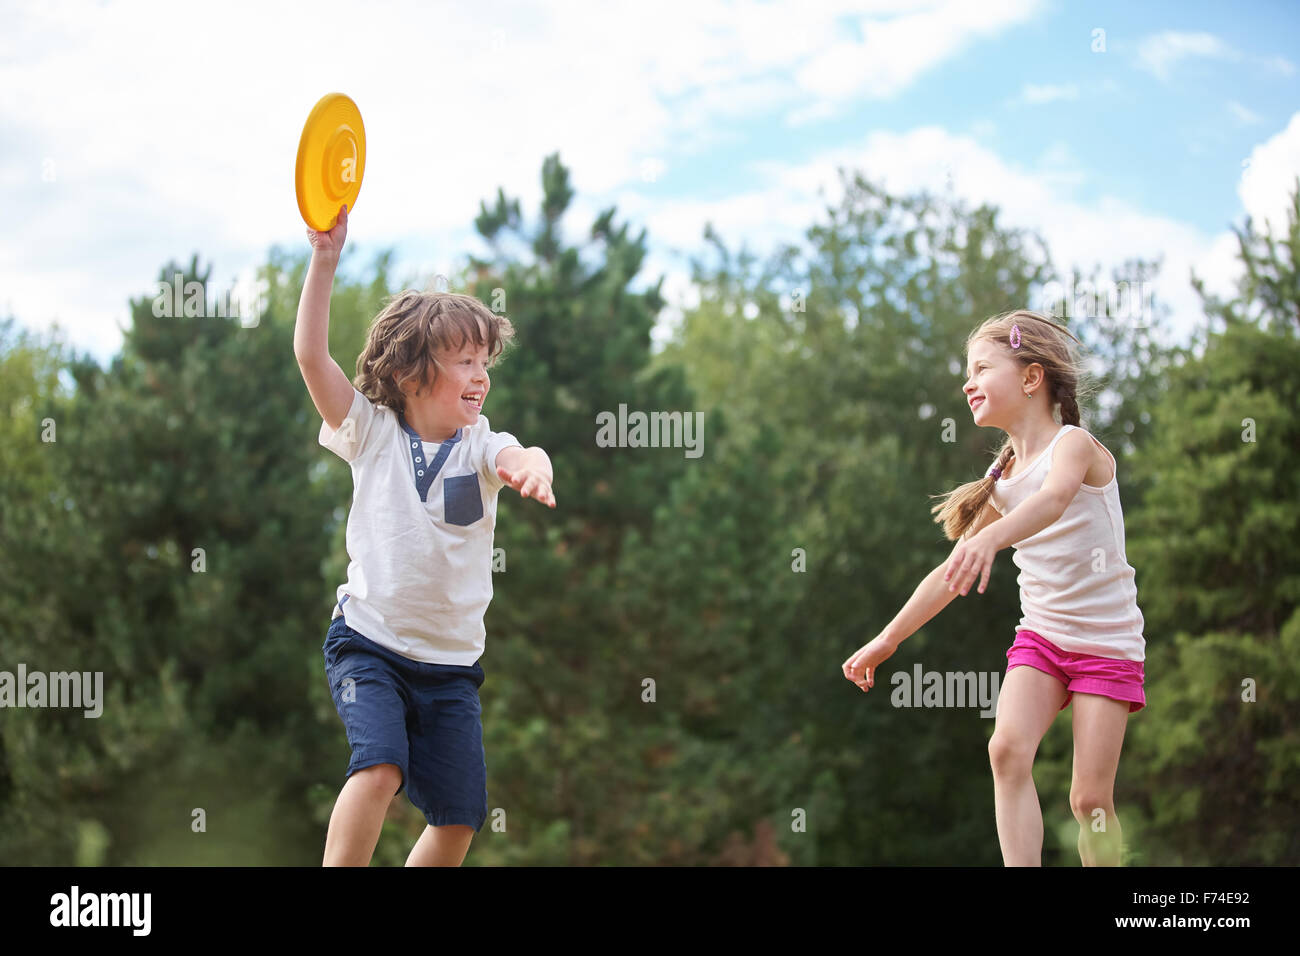 Photos Frisbee Enfant, 71 000+ photos de haute qualité gratuites